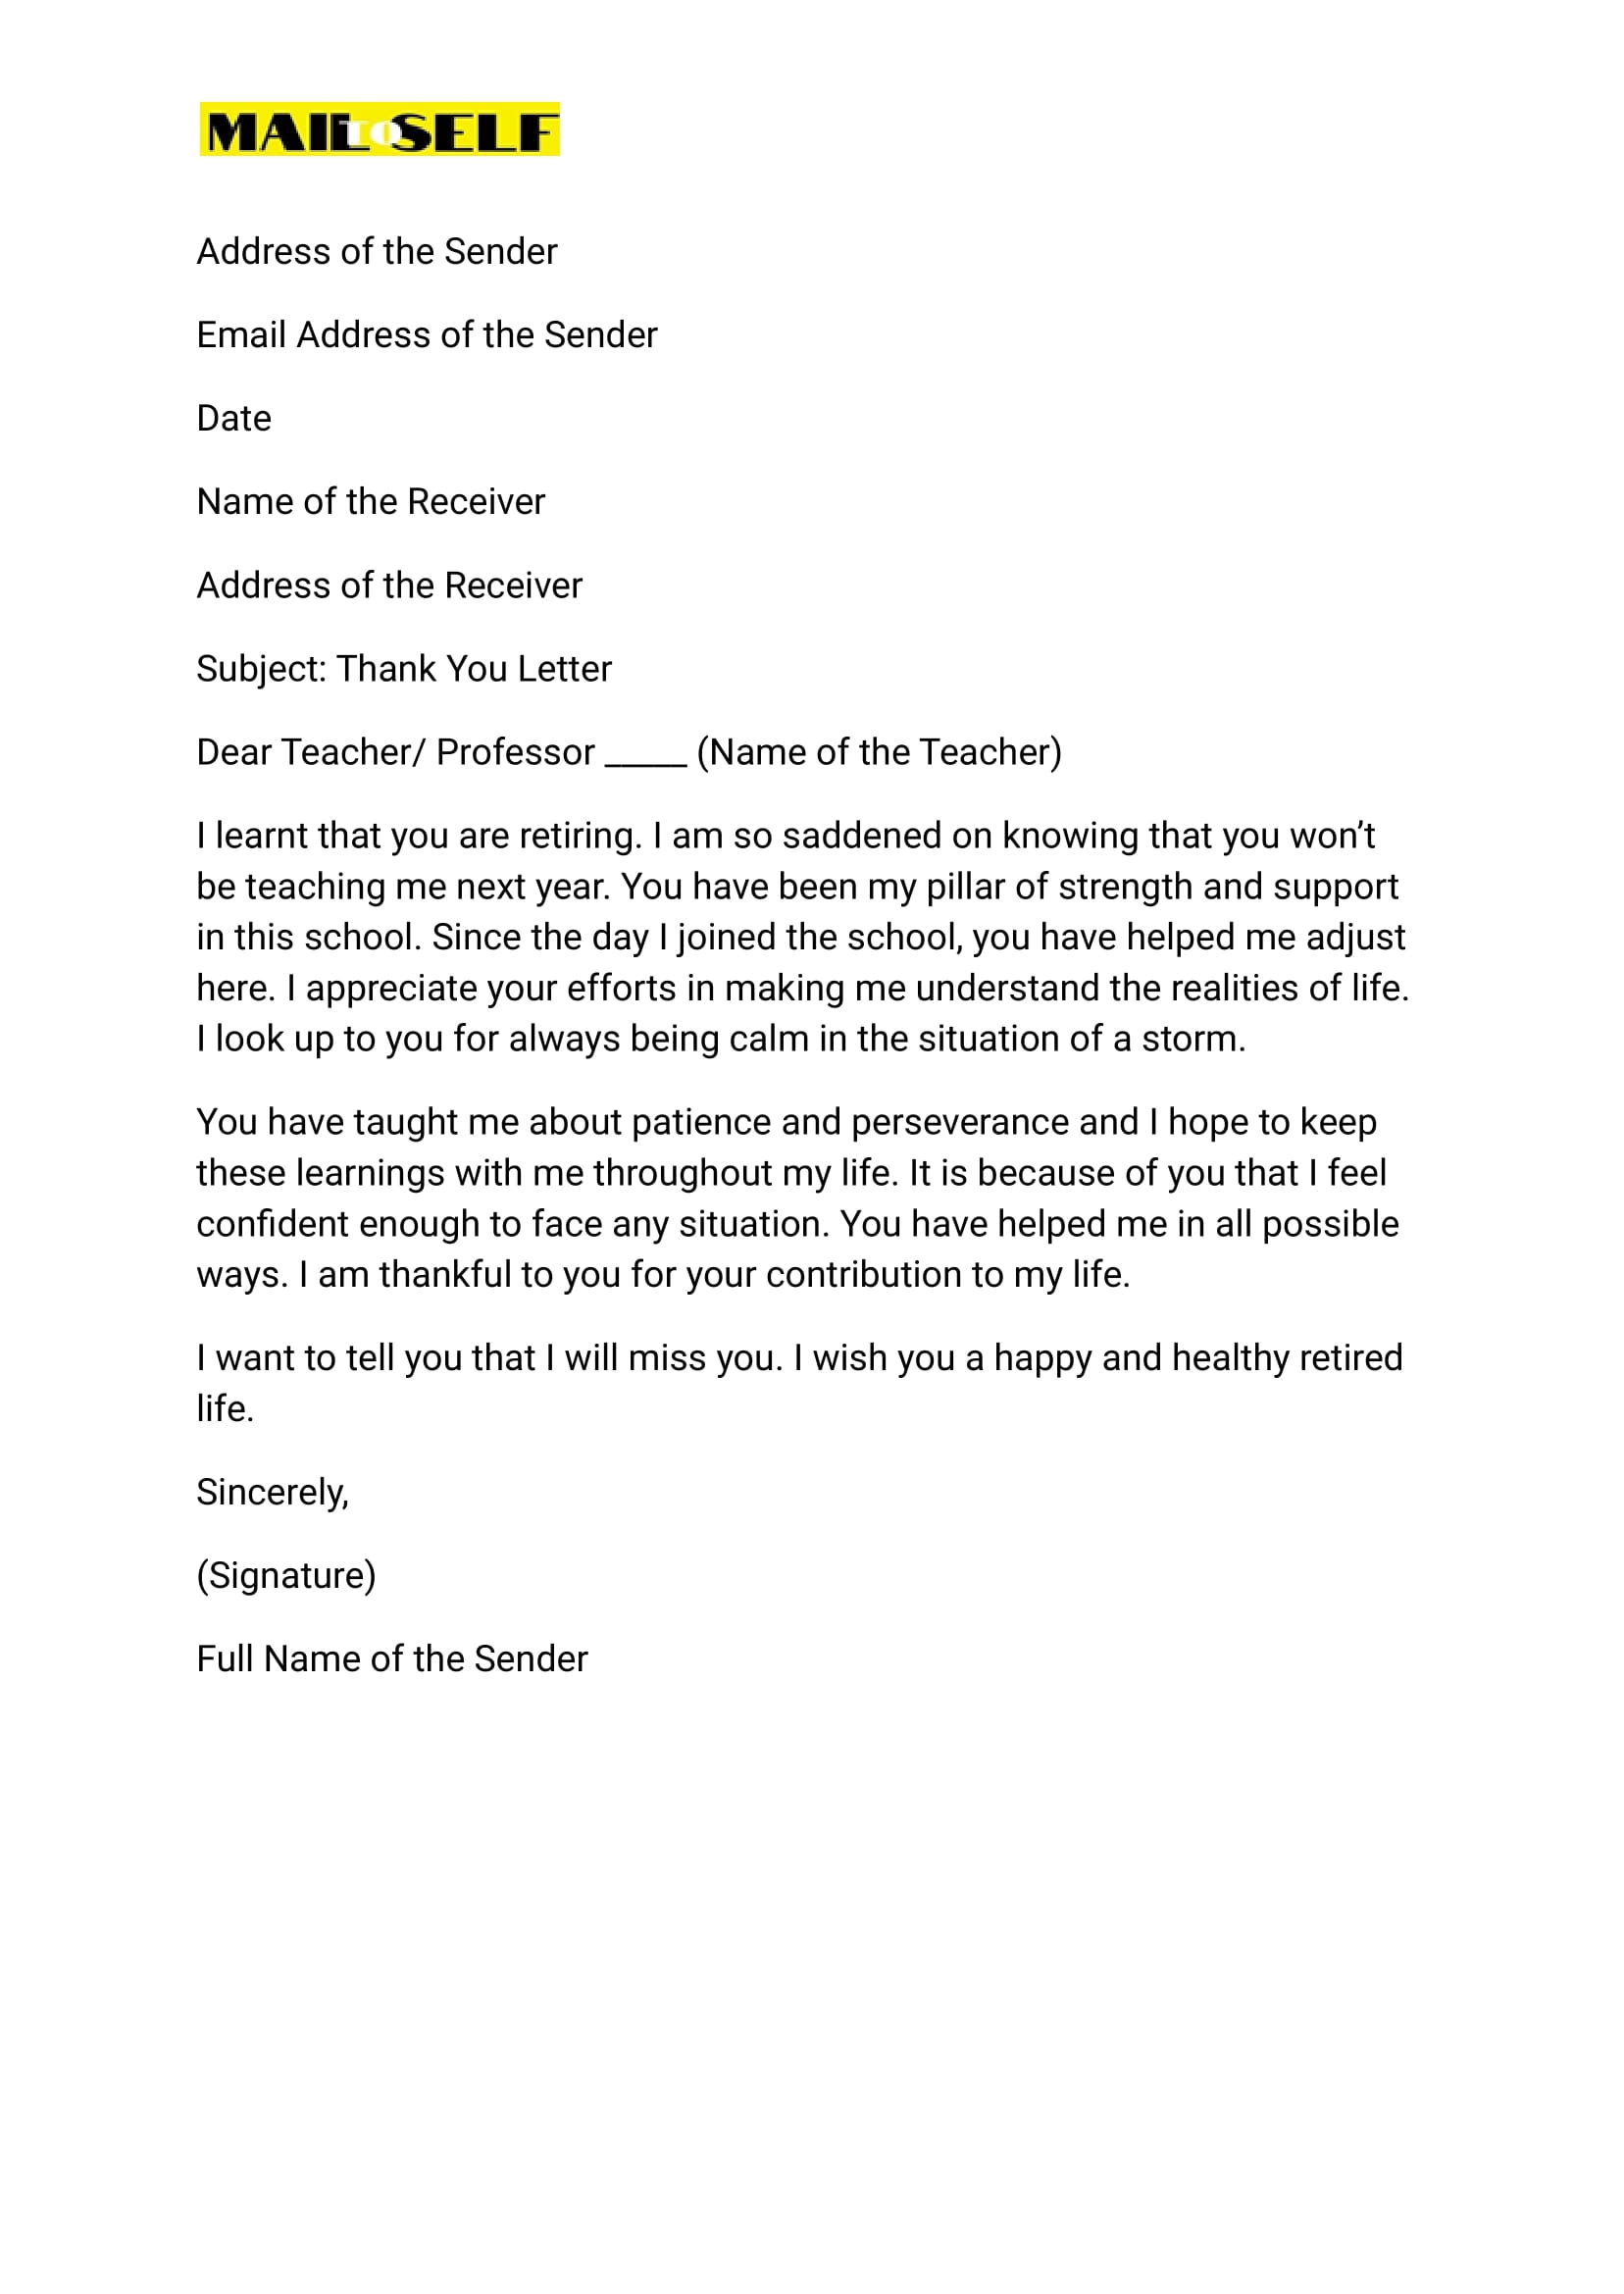 Sample #1 for Thank You Letter to Retiring Teacher